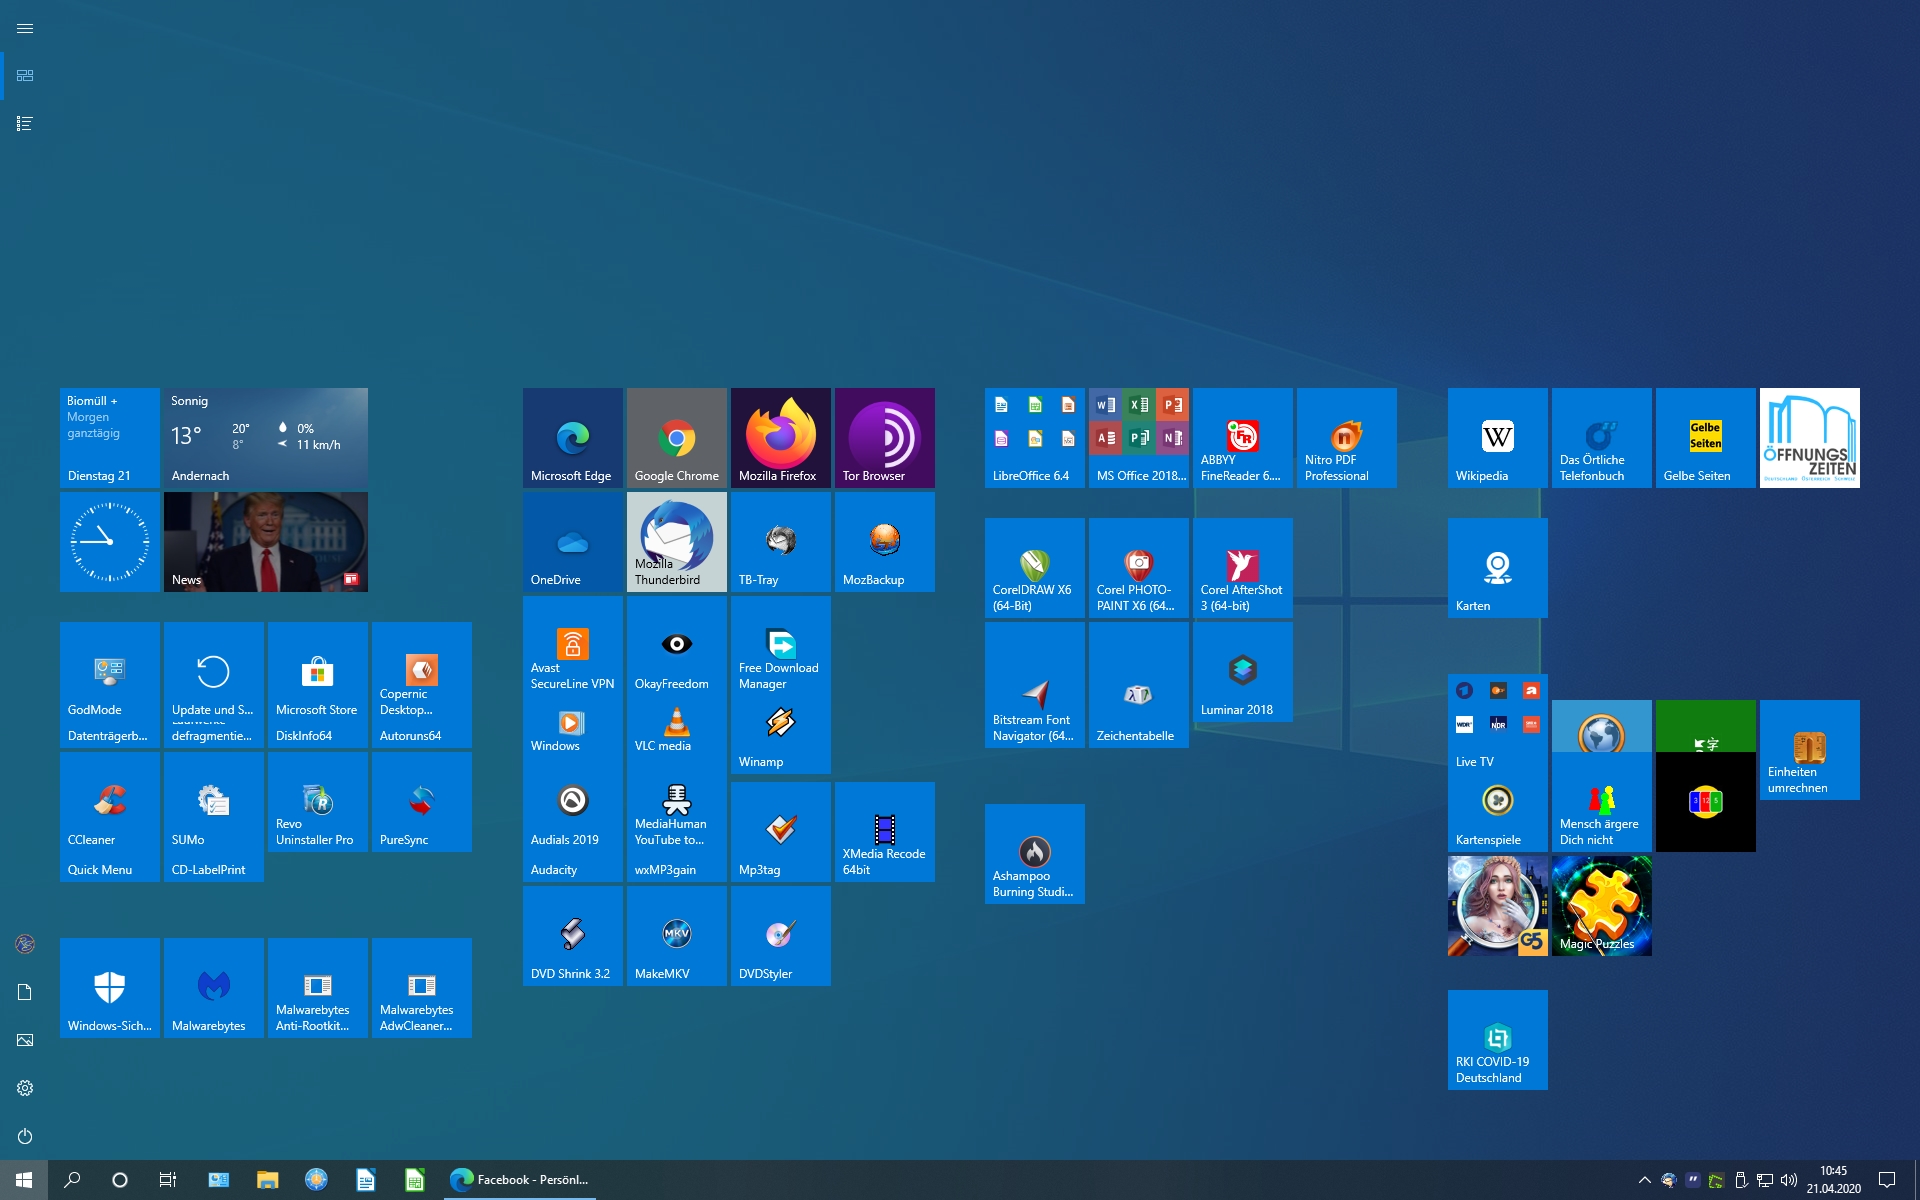 Kacheln im Windows 10 Menü zusammengeschoben